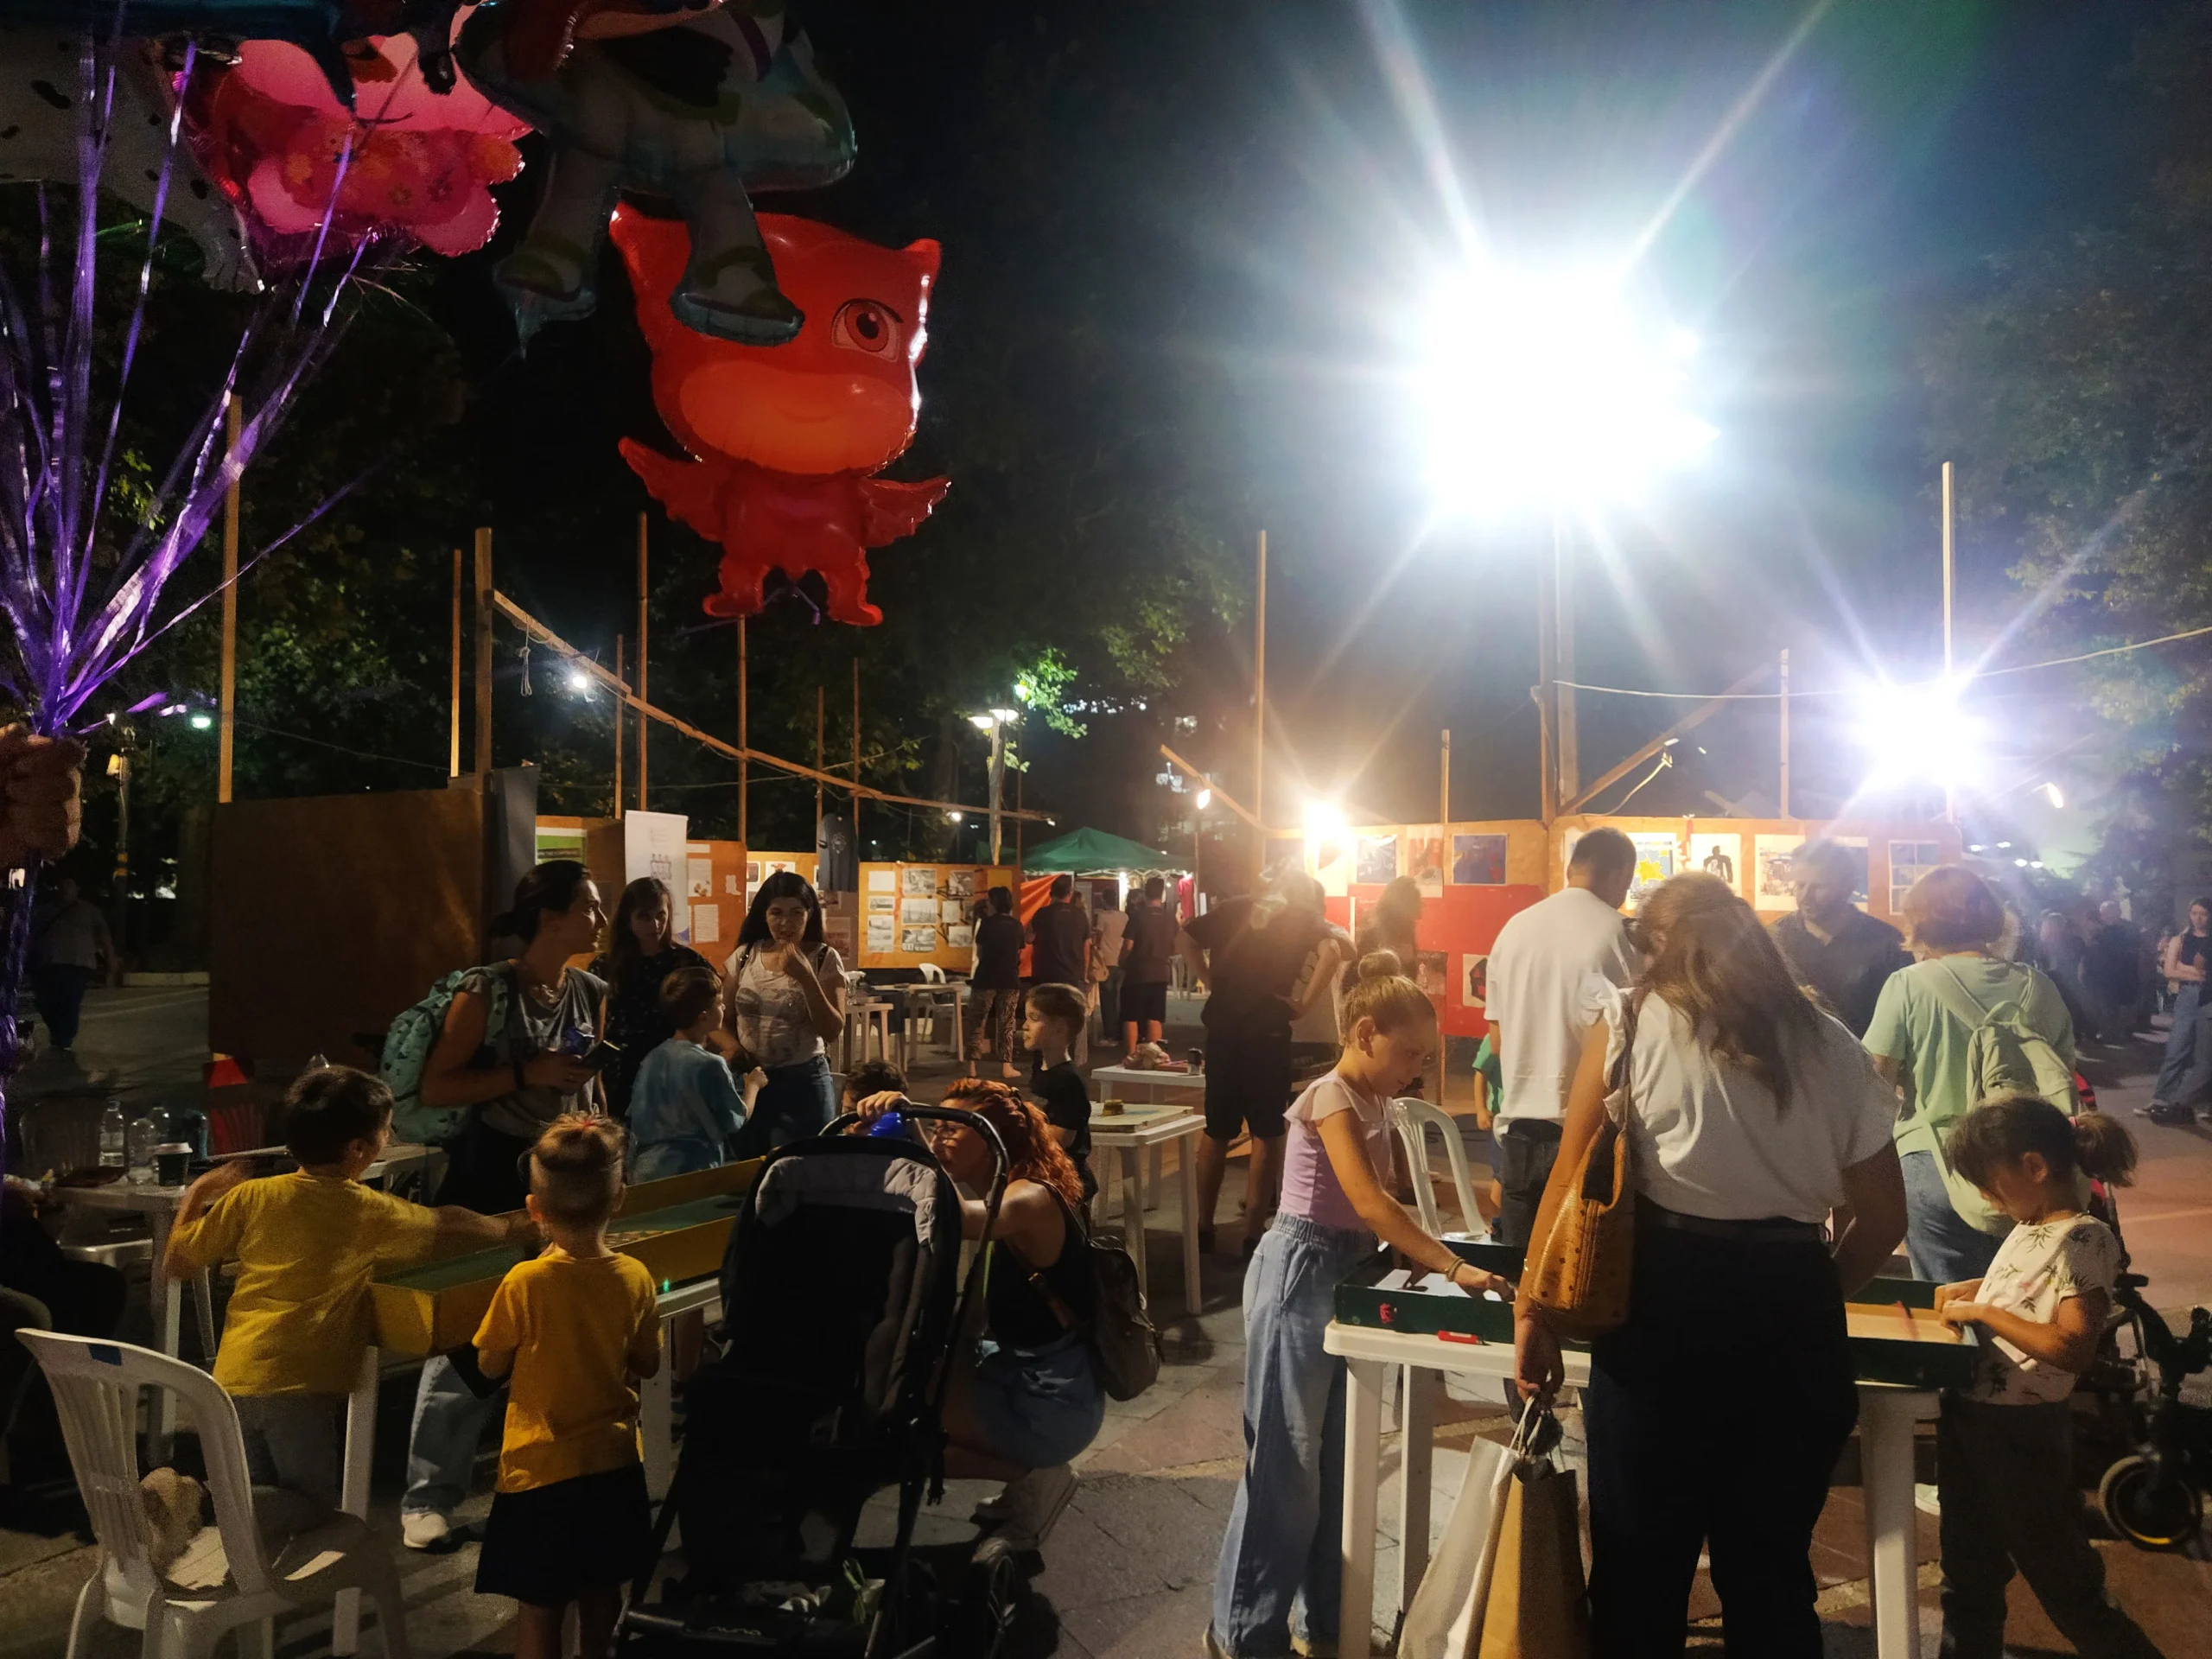 Το Πρόγραμμα Προαγωγής Αυτοβοήθειας Λάρισας συμμετείχε στο 20ο Αντιρατσιστικό Φεστιβάλ της πόλης, που διοργάνωσε η Αντιρατσιστική Πρωτοβουλία Λάρισας, την Παρασκευή 22/9 και Σάββατο 23/9/2023 στον χώρο της Κεντρικής Πλατείας. Στο φετινό φεστιβάλ το Πρόγραμμα Προαγωγής Αυτοβοήθειας , ορμώμενο από την σύγχρονη πραγματικότητα των φυσικών καταστροφών στη Θεσσαλία, διοργάνωσε ένα συμμετοχικό εργαστήρι κολλάζ με τίτλο «Ένα ποτάμι εικόνες» . Στόχος του εργαστηρίου ήταν να αποτυπωθεί ένα συλλογικό μήνυμα αλληλεγγύης και αντιρατσισμού για το 20ο Αντιρατσιστικό Φεστιβάλ. Παράλληλα μικροί και μεγάλοι είχαν την ευκαιρία να μάθουν, να παίξουν και να ψυχαγωγηθούν με τα «Παιχνίδια του Κόσμου». Το Πρόγραμμα Προαγωγής Αυτοβοήθειας Λάρισας στο 20ο Αντιρατσιστικό Φεστιβάλ Λάρισας